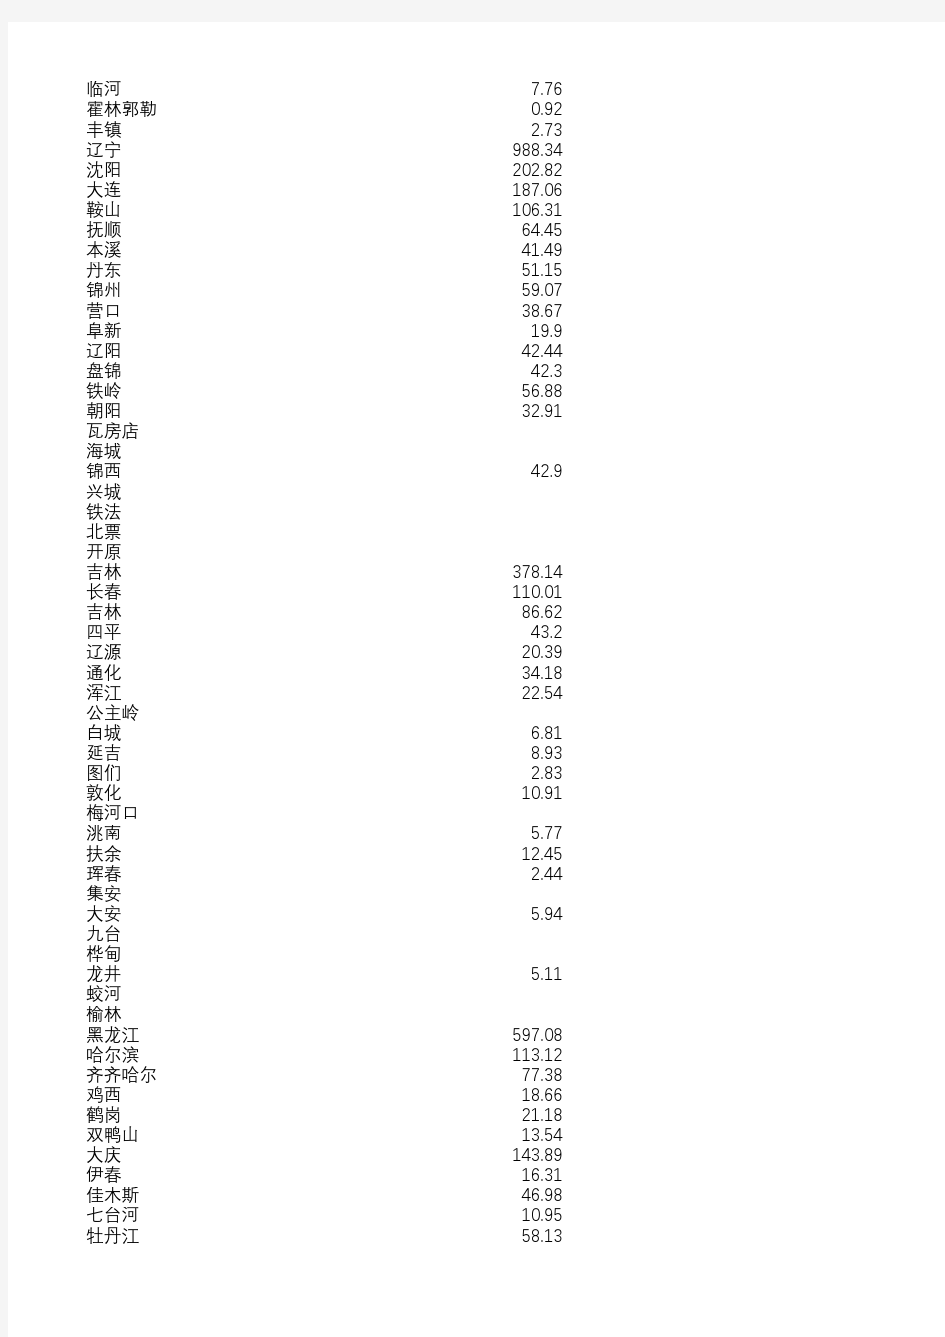 中国城市统计年鉴(1990年和1991年数据)城市国内生产总值(按1990年不变价格计算)